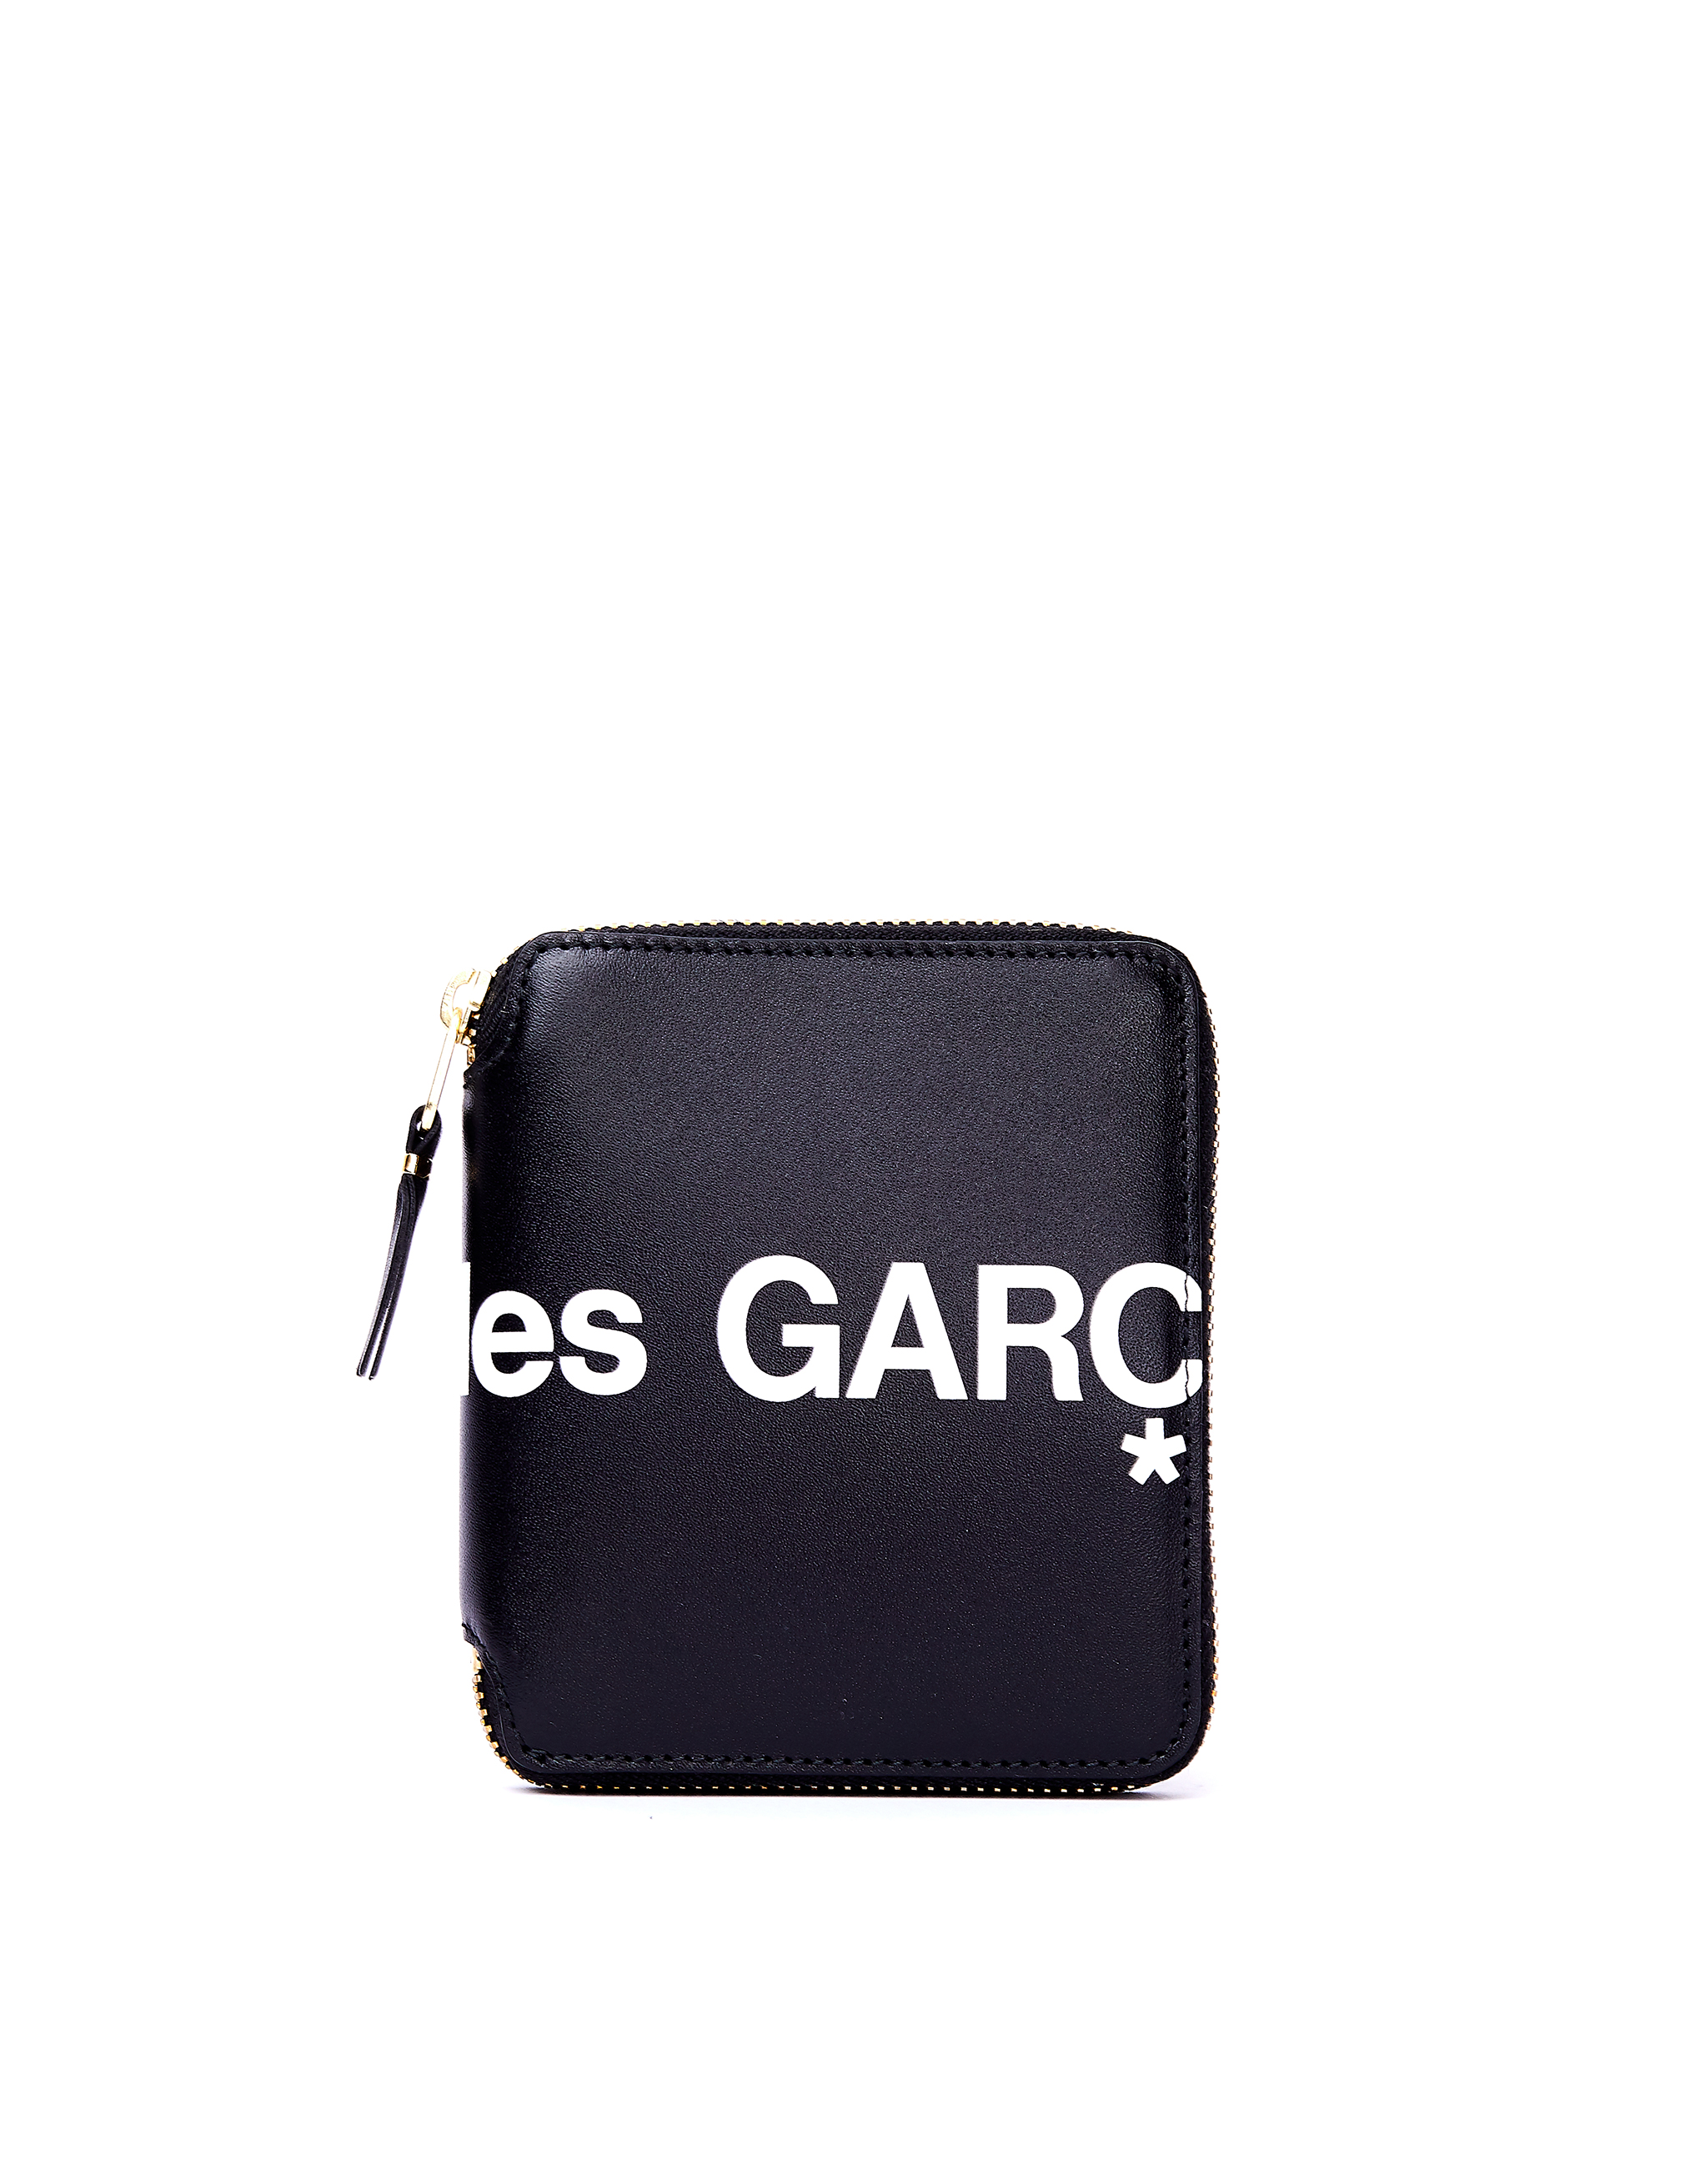 Черный кожаный кошелек с логотипом Comme des Garcons Wallets SA2100HL/blk, размер One Size SA2100HL/blk - фото 1